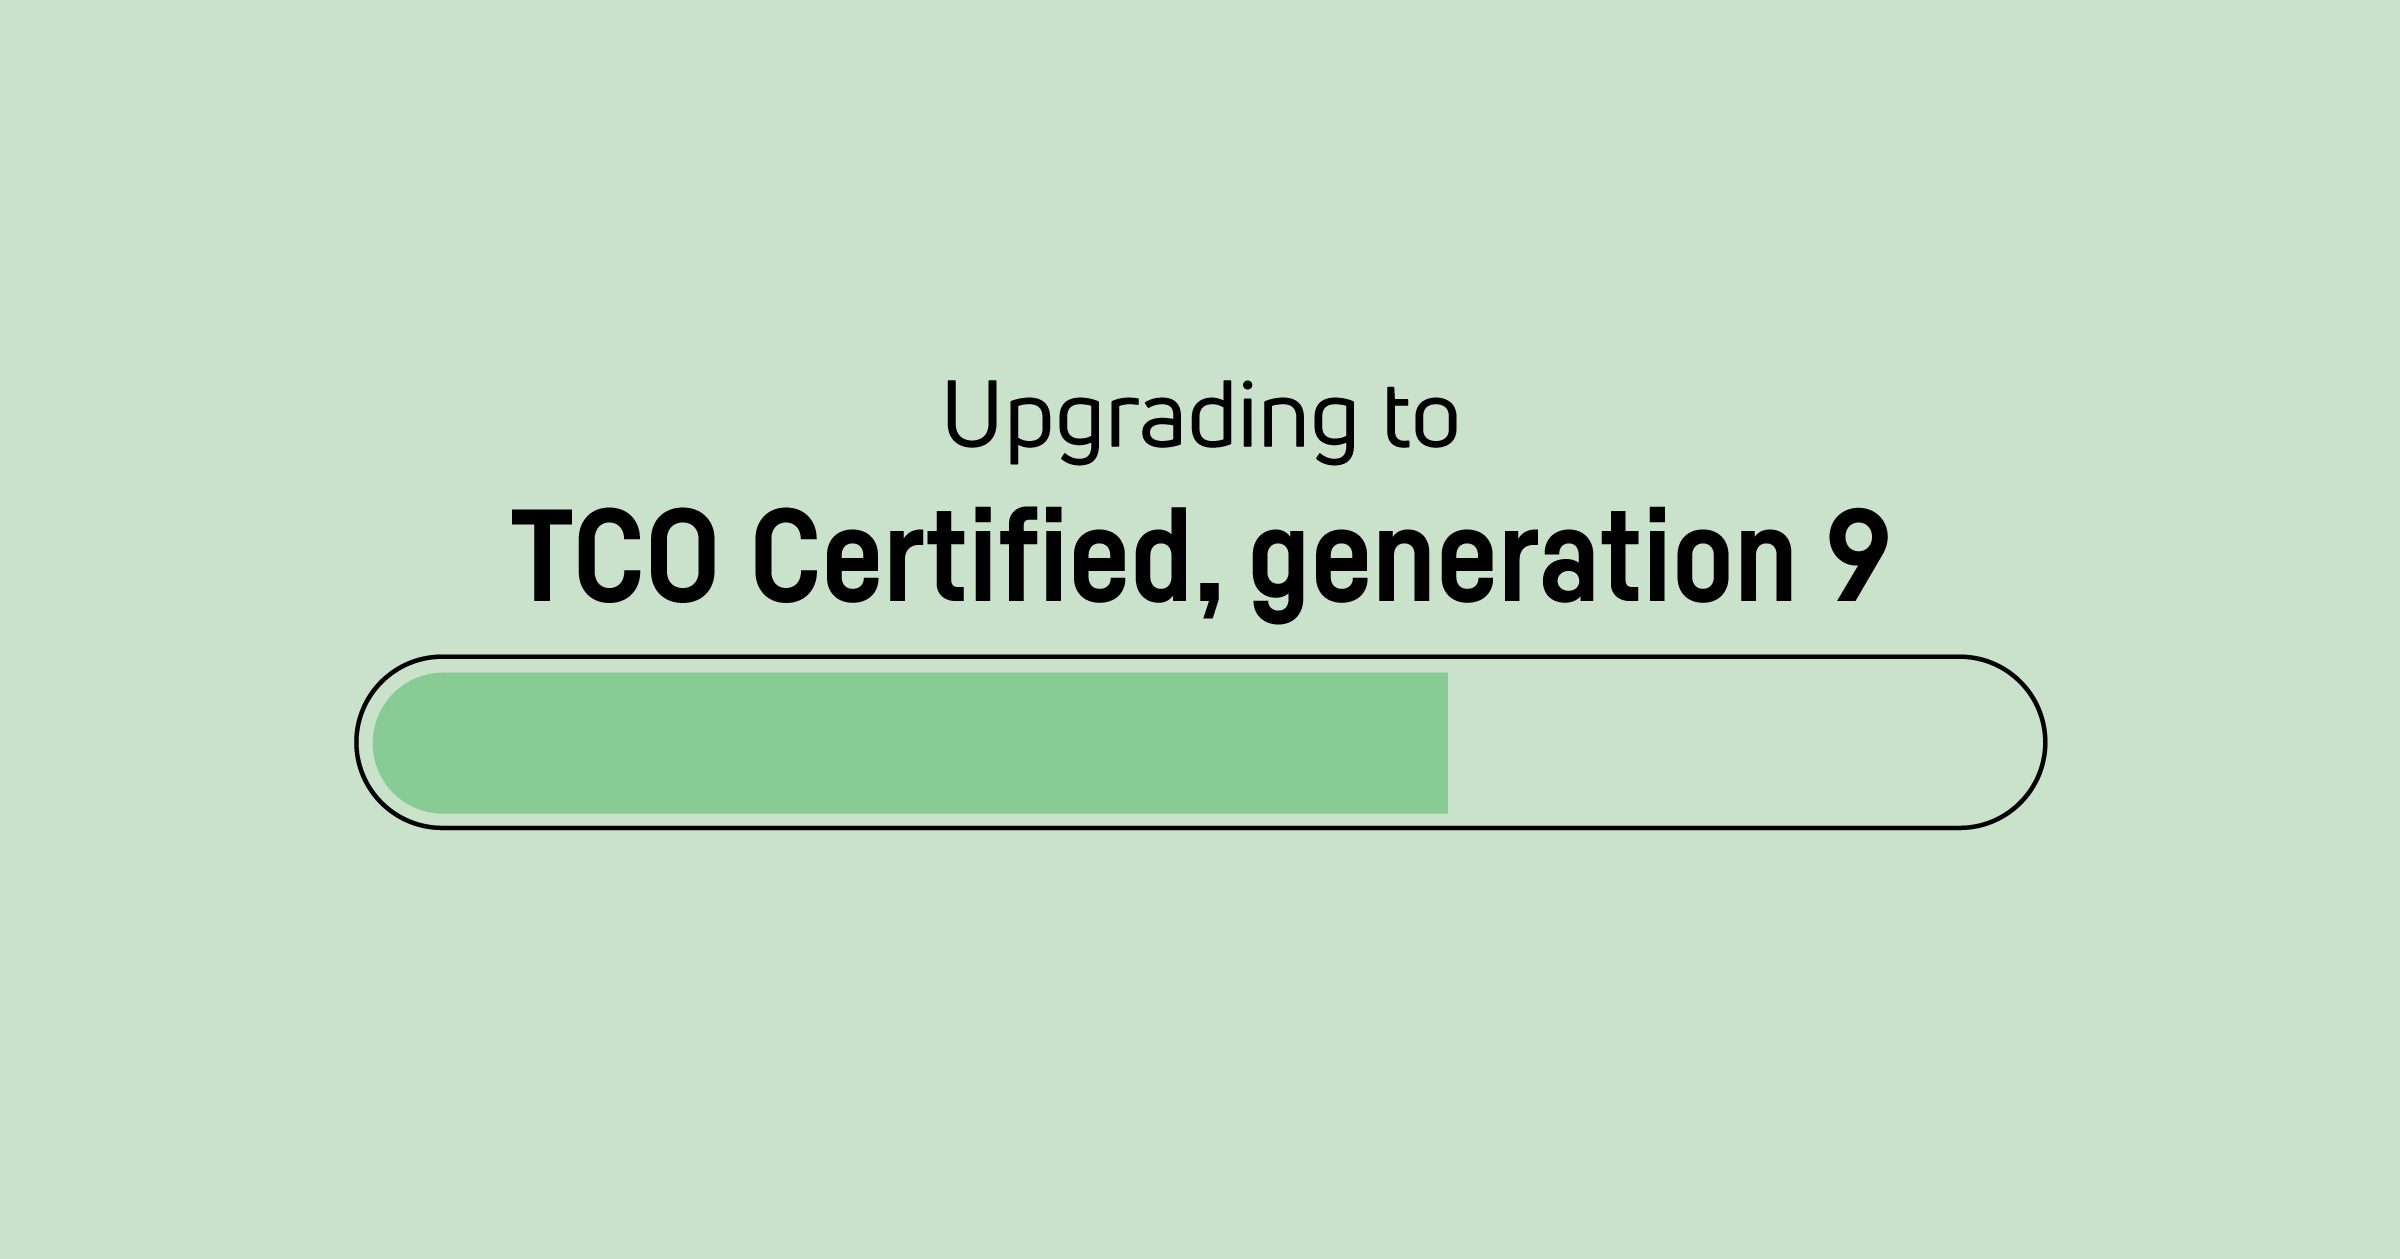 Zeit für ein Upgrade der Zertifikate TCO Certified, generation 8